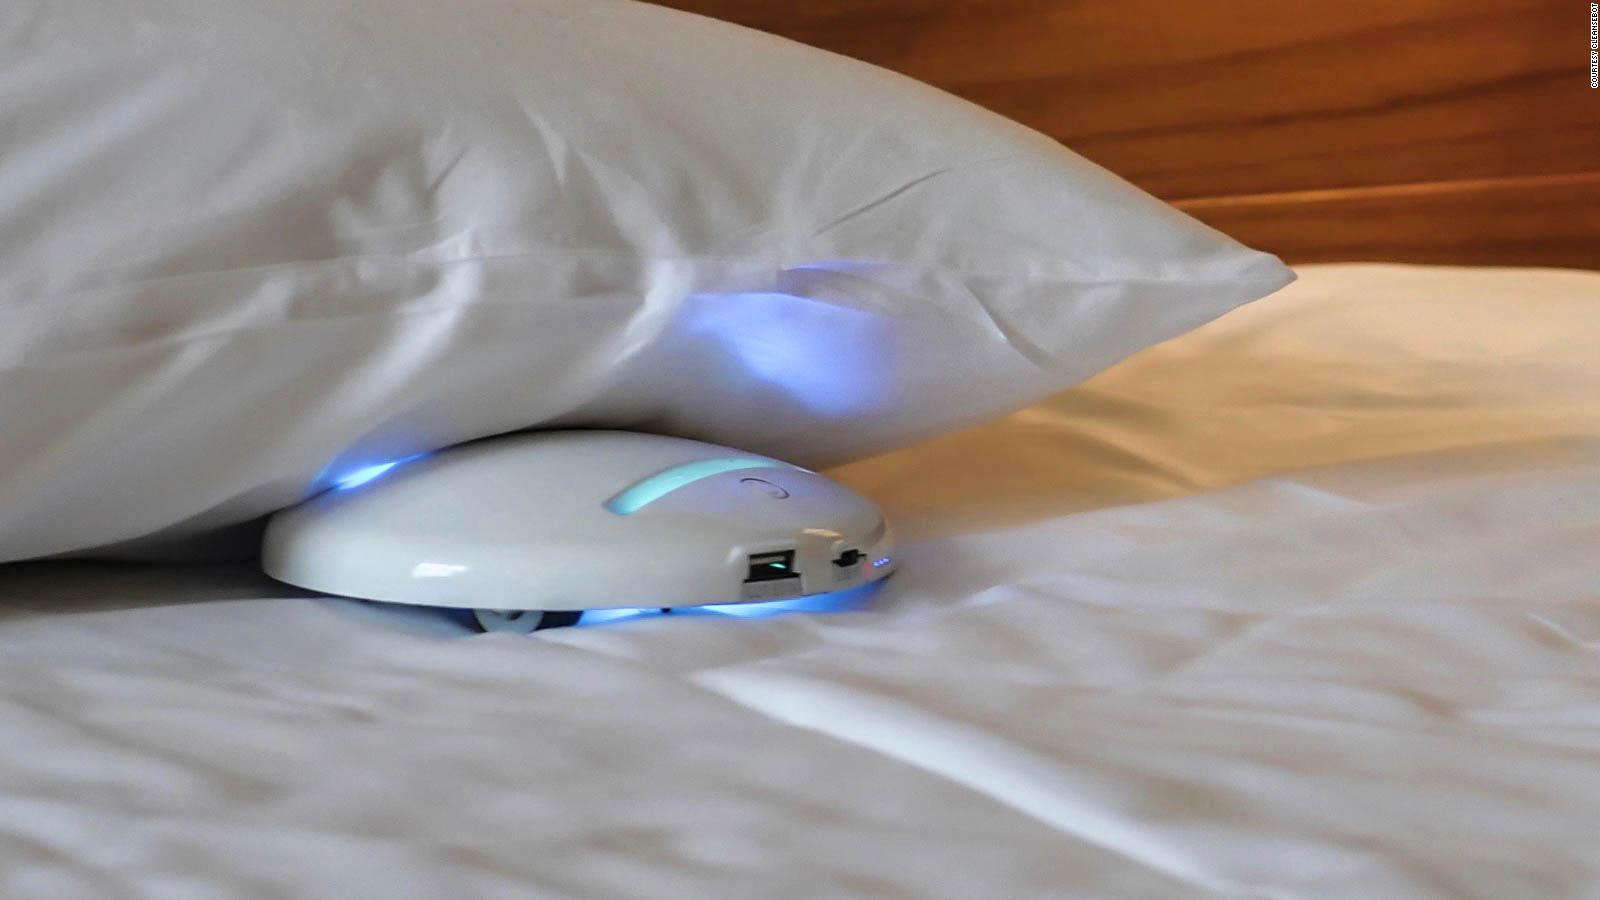 Asociación túnel Vacaciones Un pequeño robot dejaría tu habitación de hotel libre de gérmenes | Video |  CNN